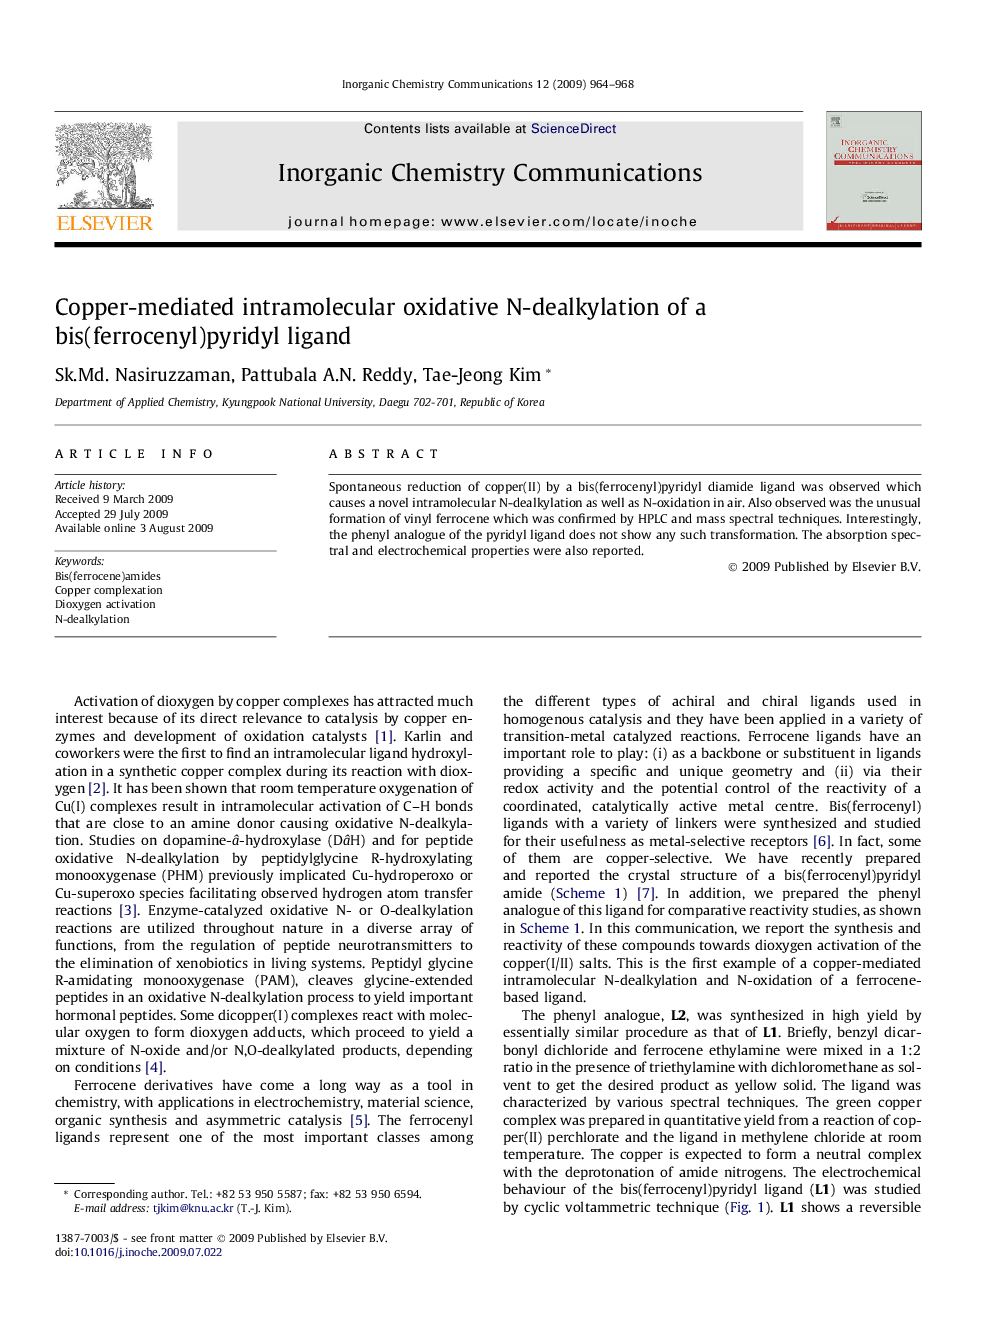 Copper-mediated intramolecular oxidative N-dealkylation of a bis(ferrocenyl)pyridyl ligand